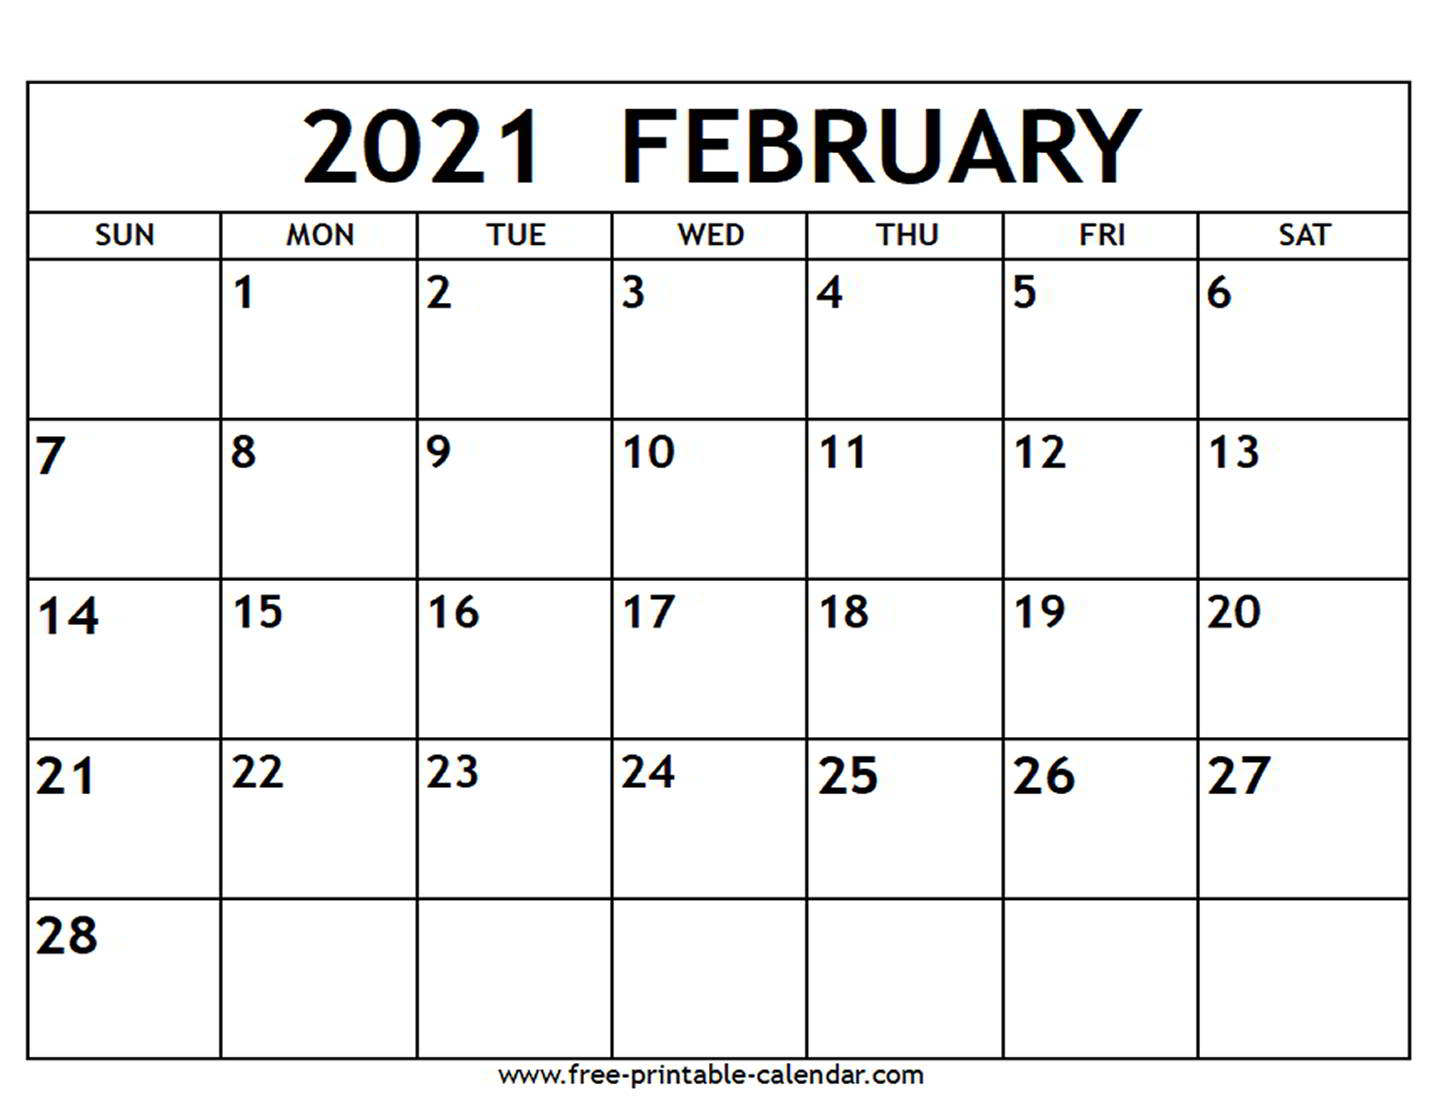 February 2021 Calendar Free Printable Calendar